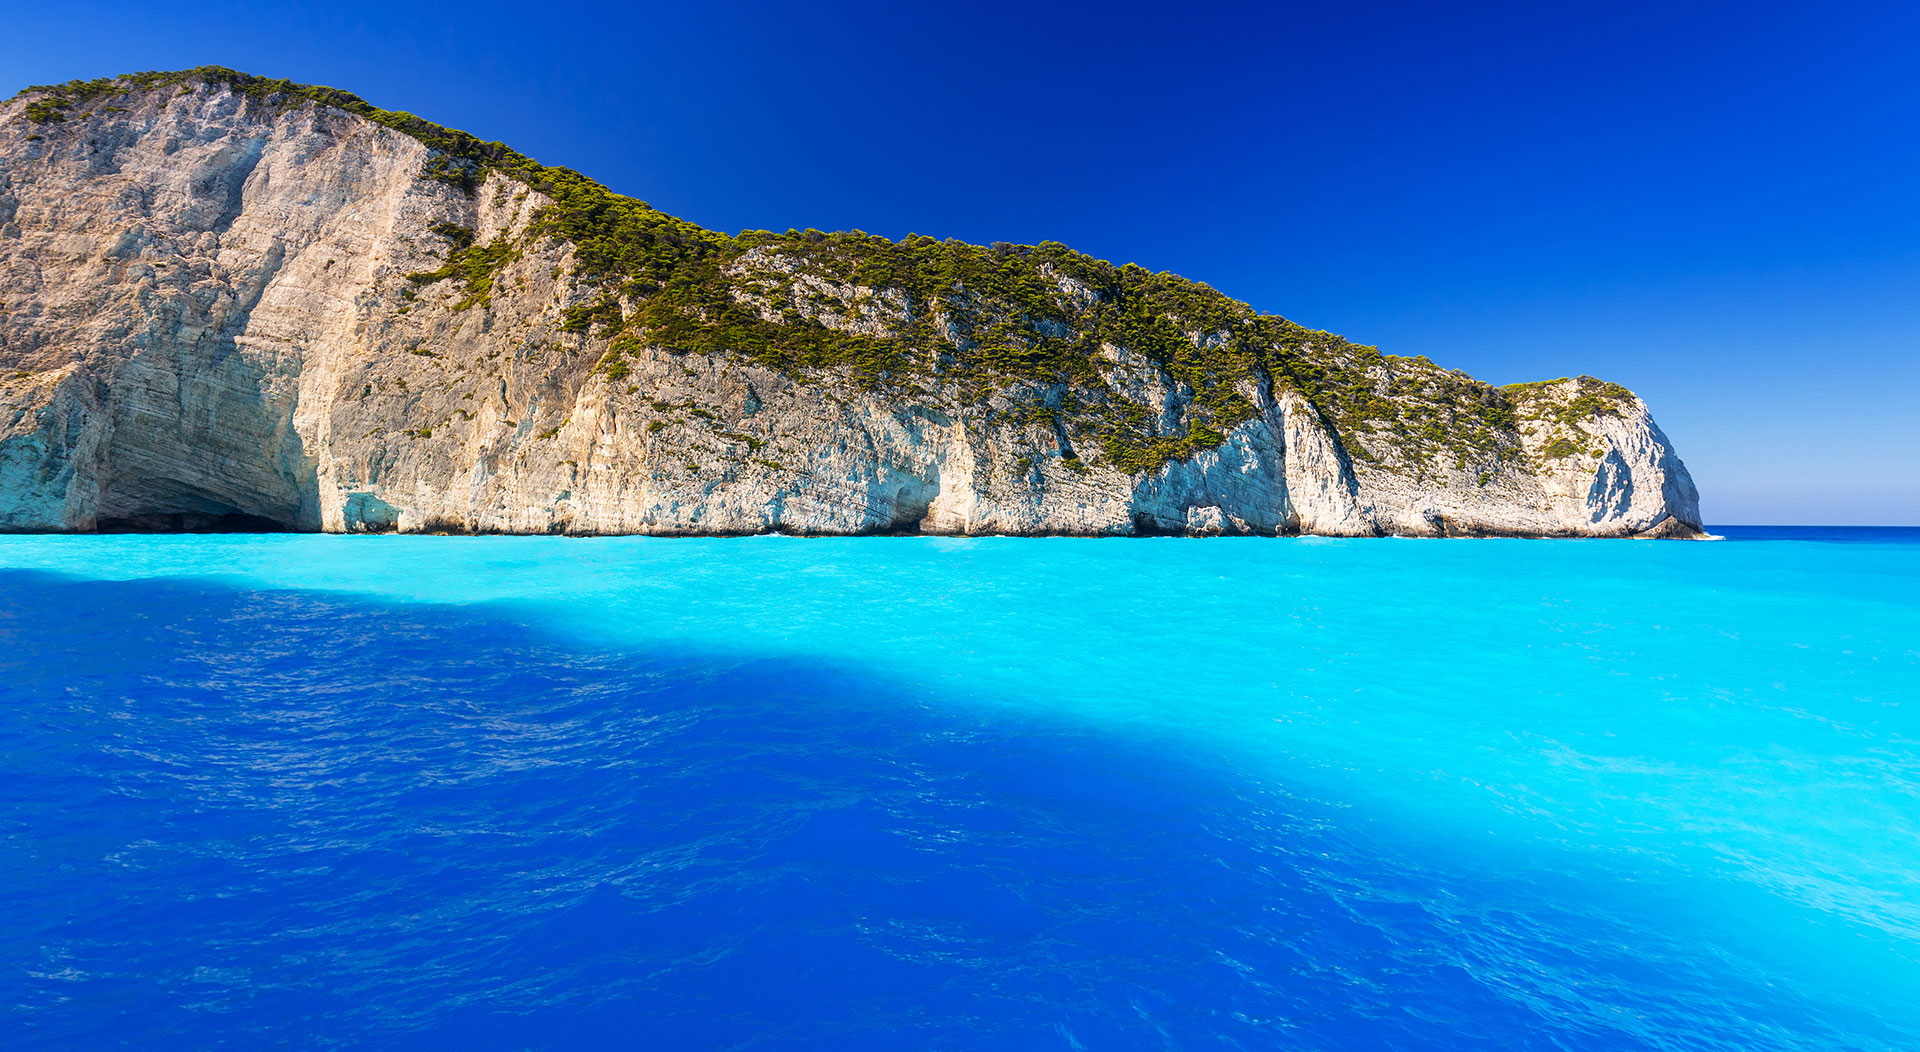 Isole Ioniche, Grecia: Crociere in barca a vela